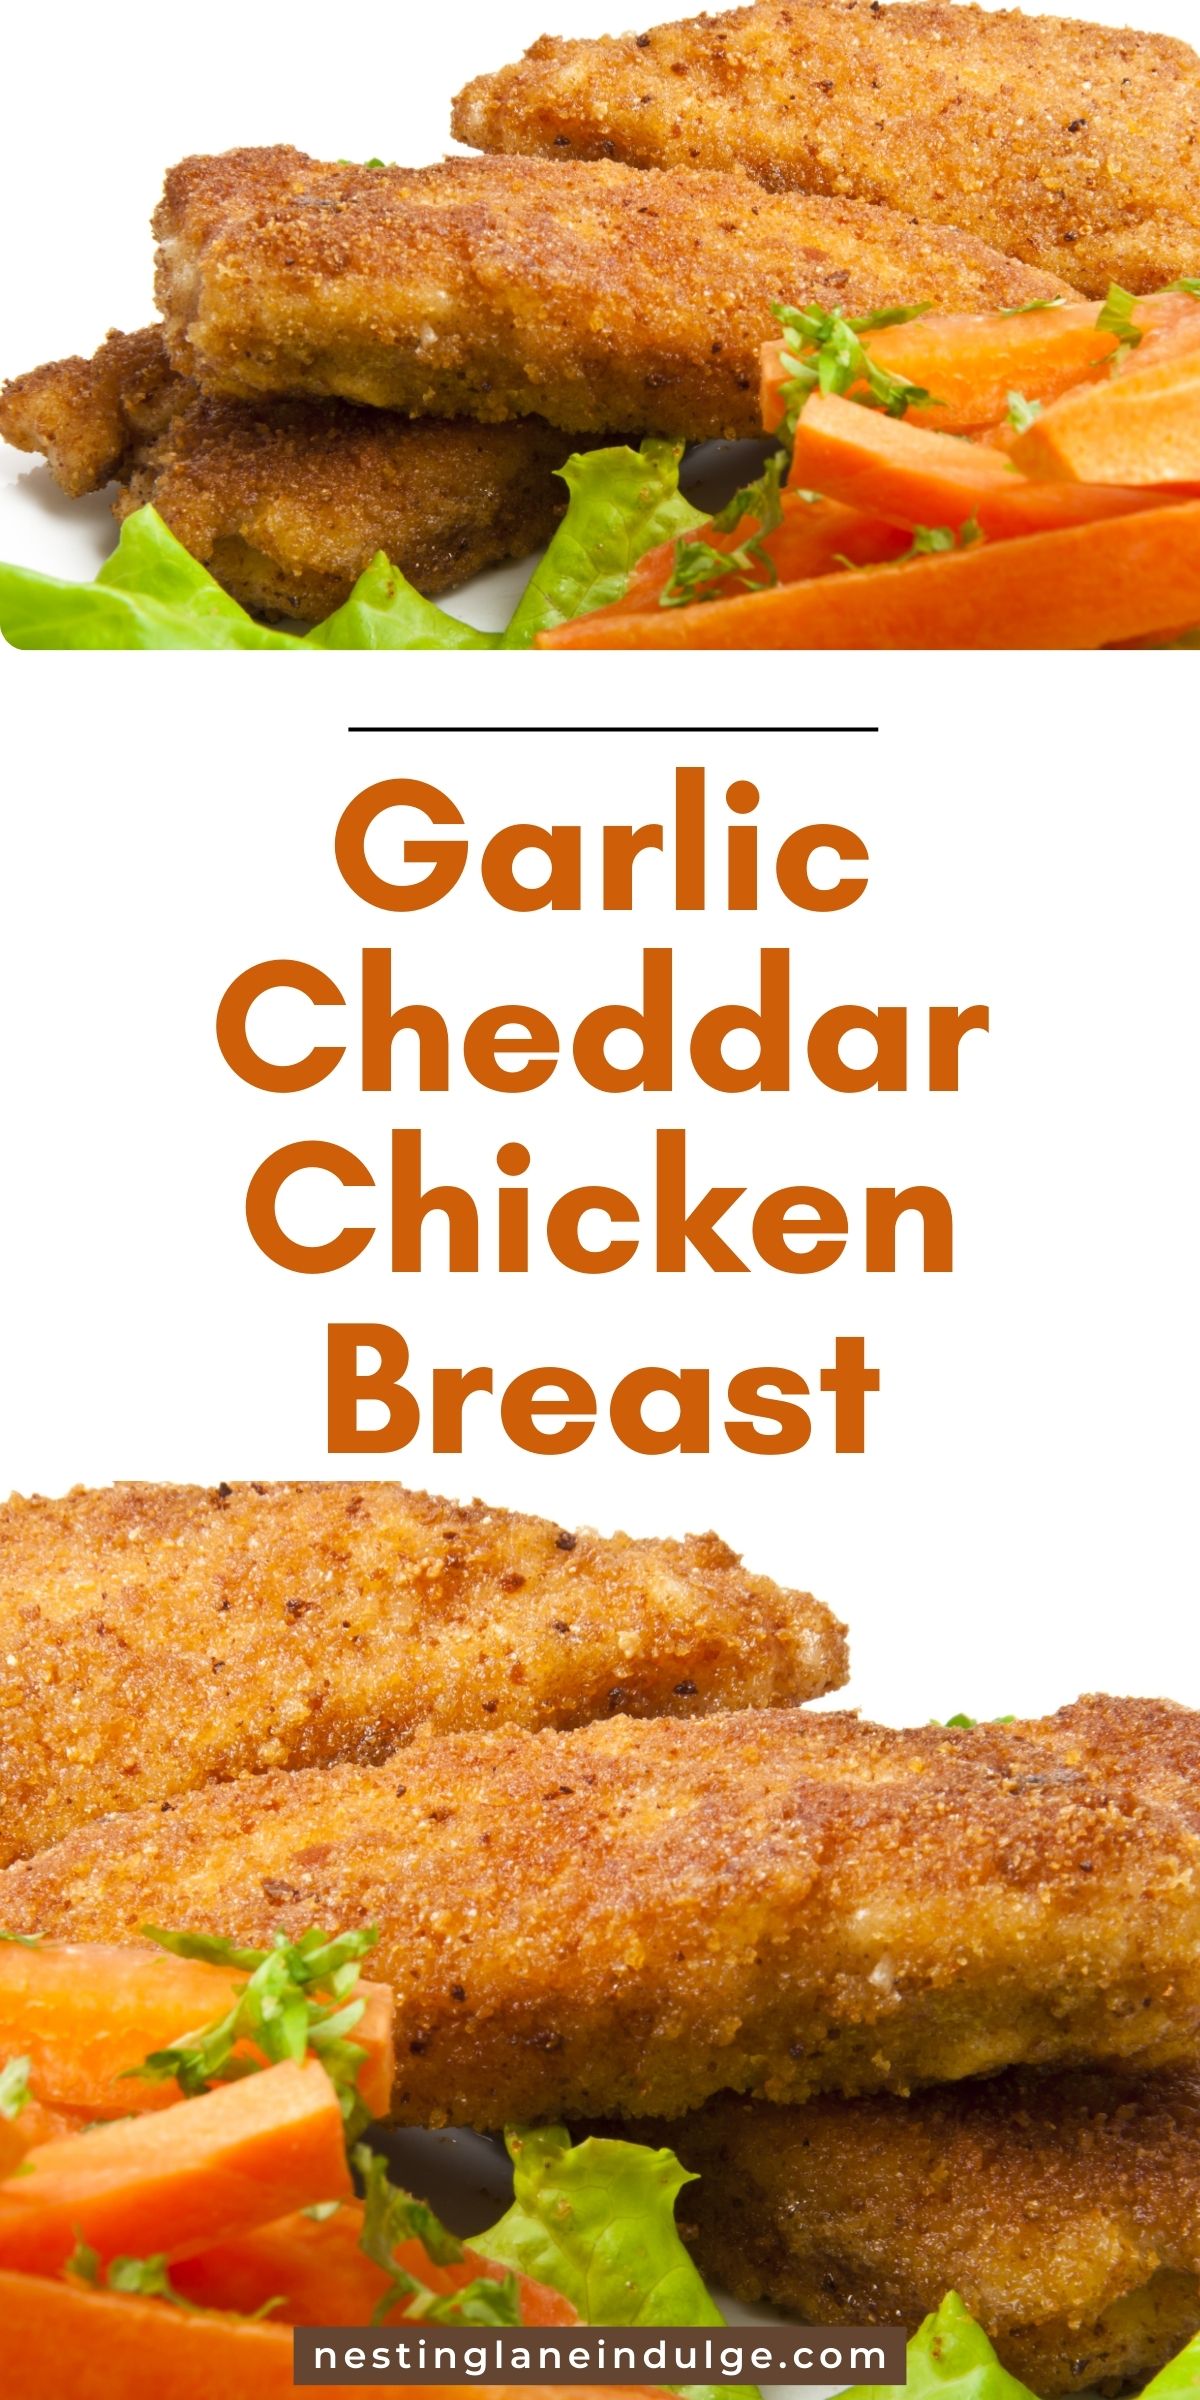 Garlic Cheddar Chicken Breast Graphic